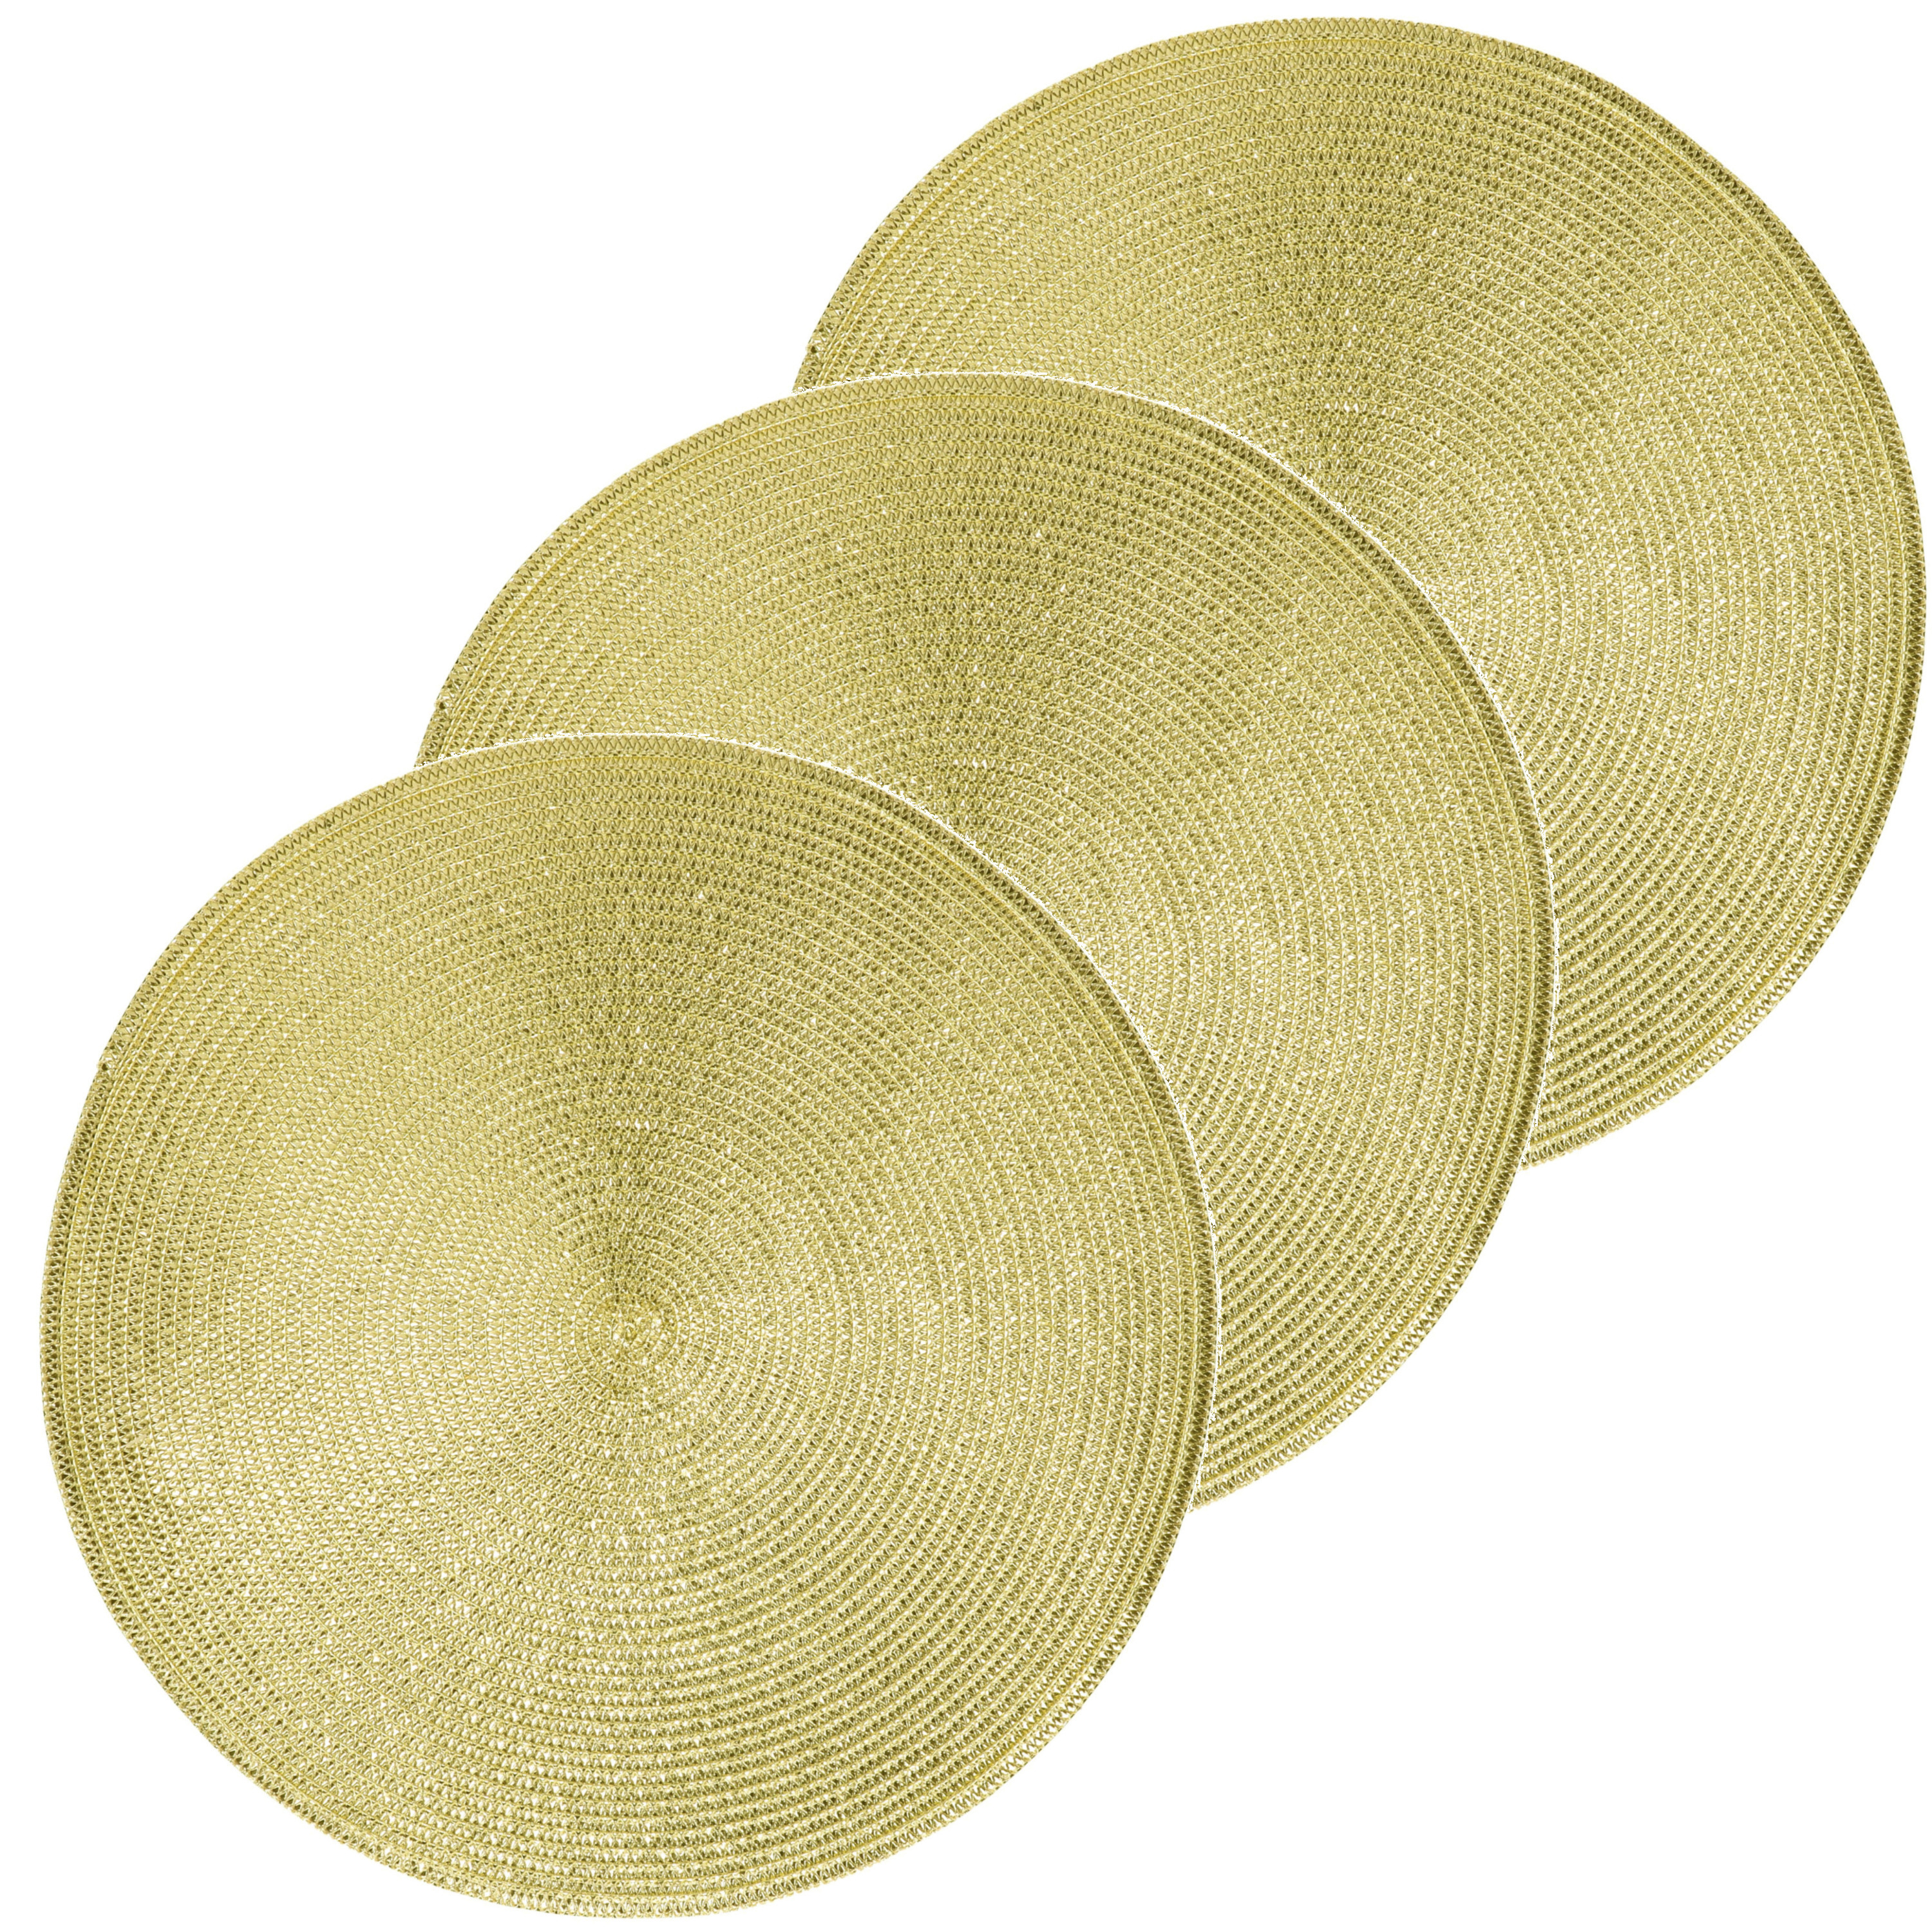 8x Ronde placemats glimmend goud 38 cm geweven/gevlochten